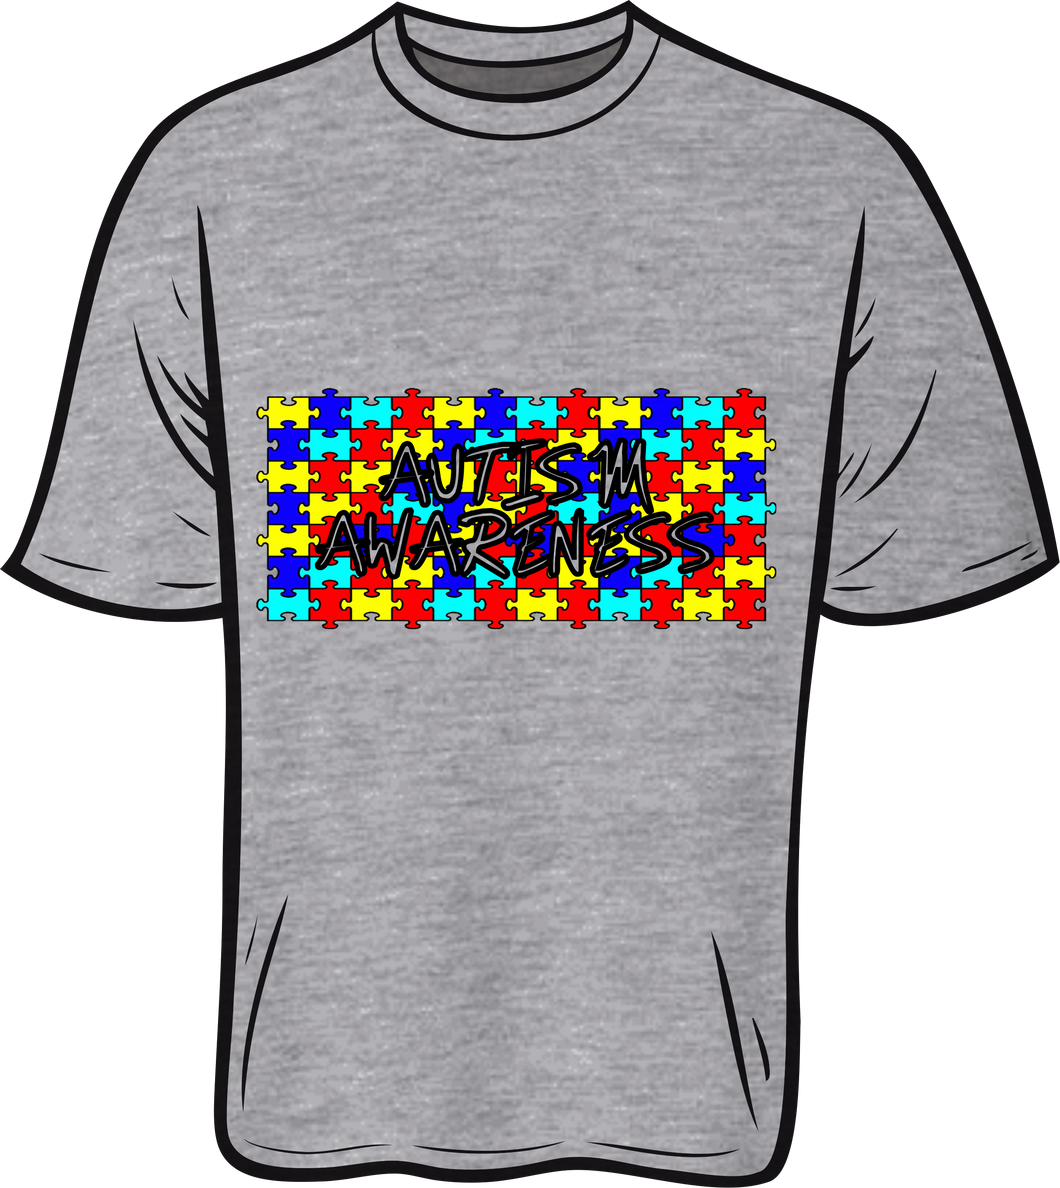 Autism awareness Short sleeve T shirt